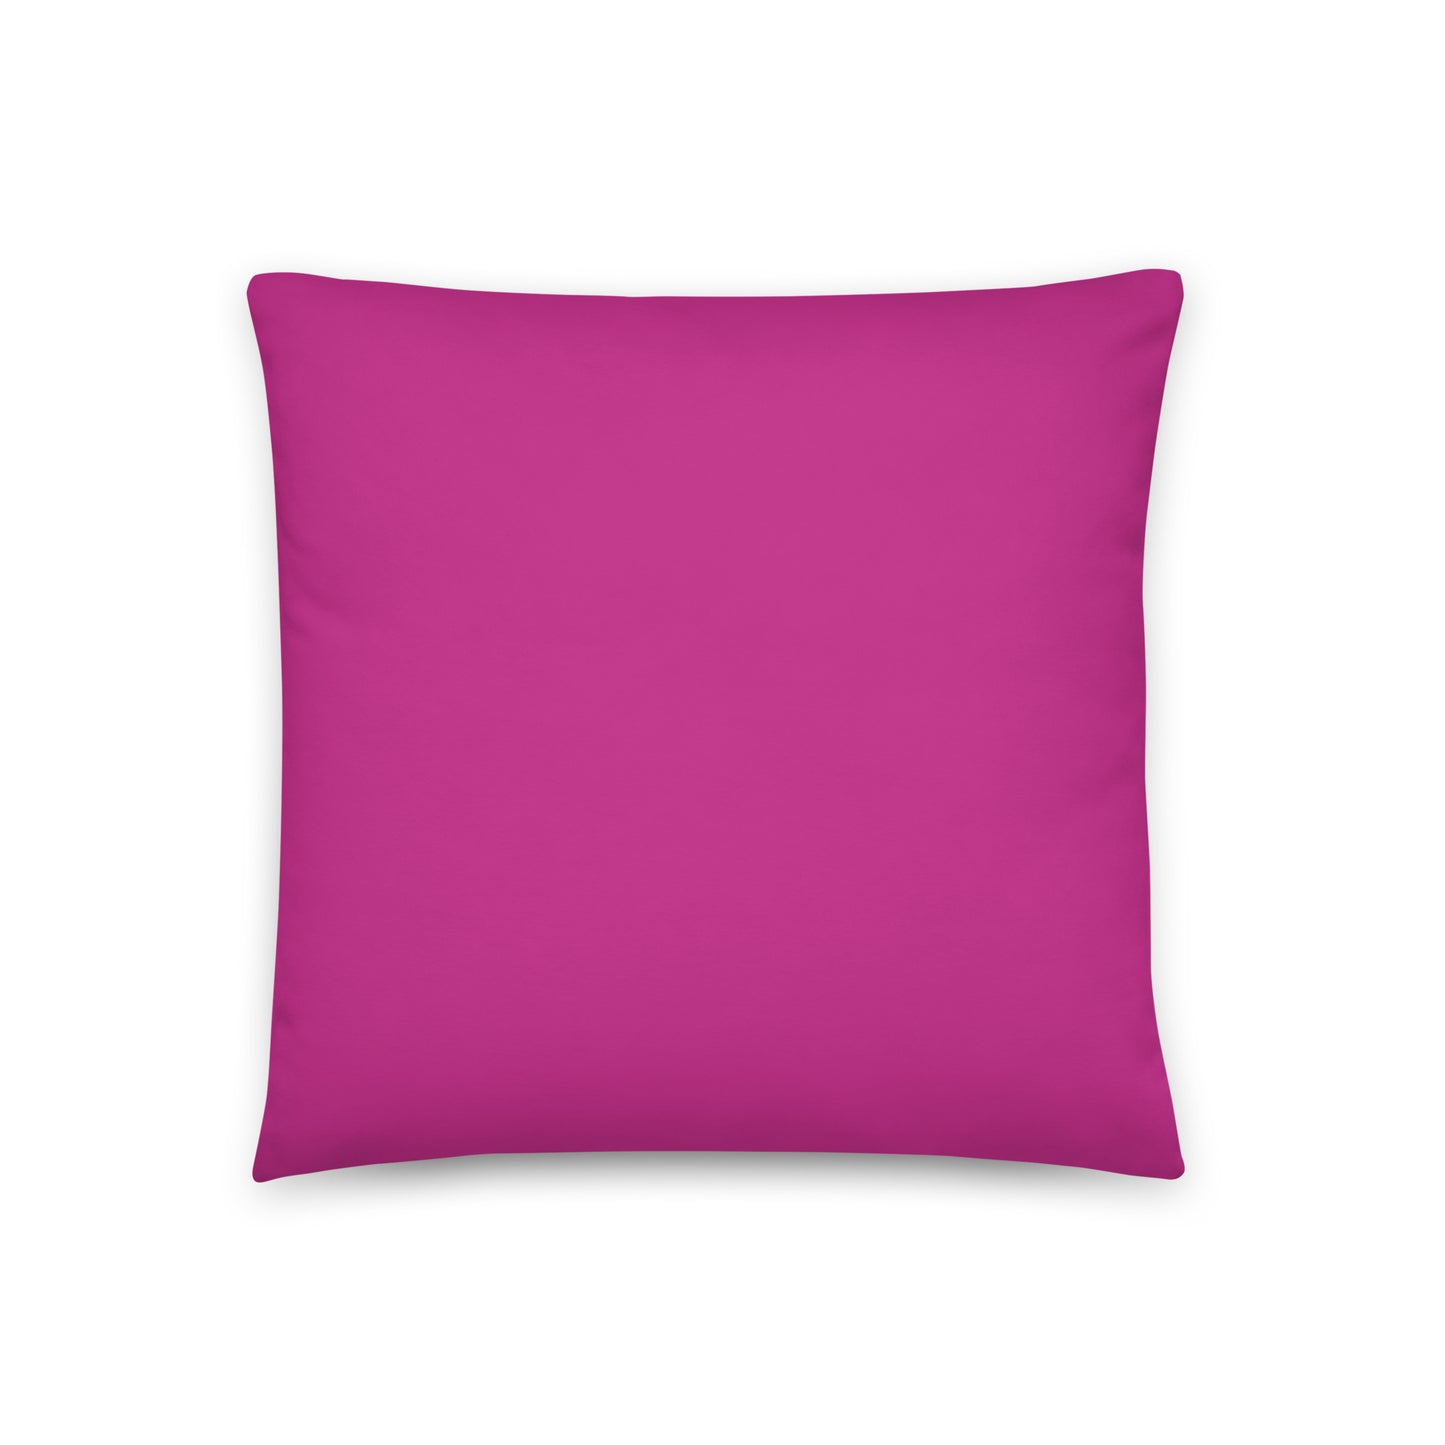 Pink Bell Flowers Pillow